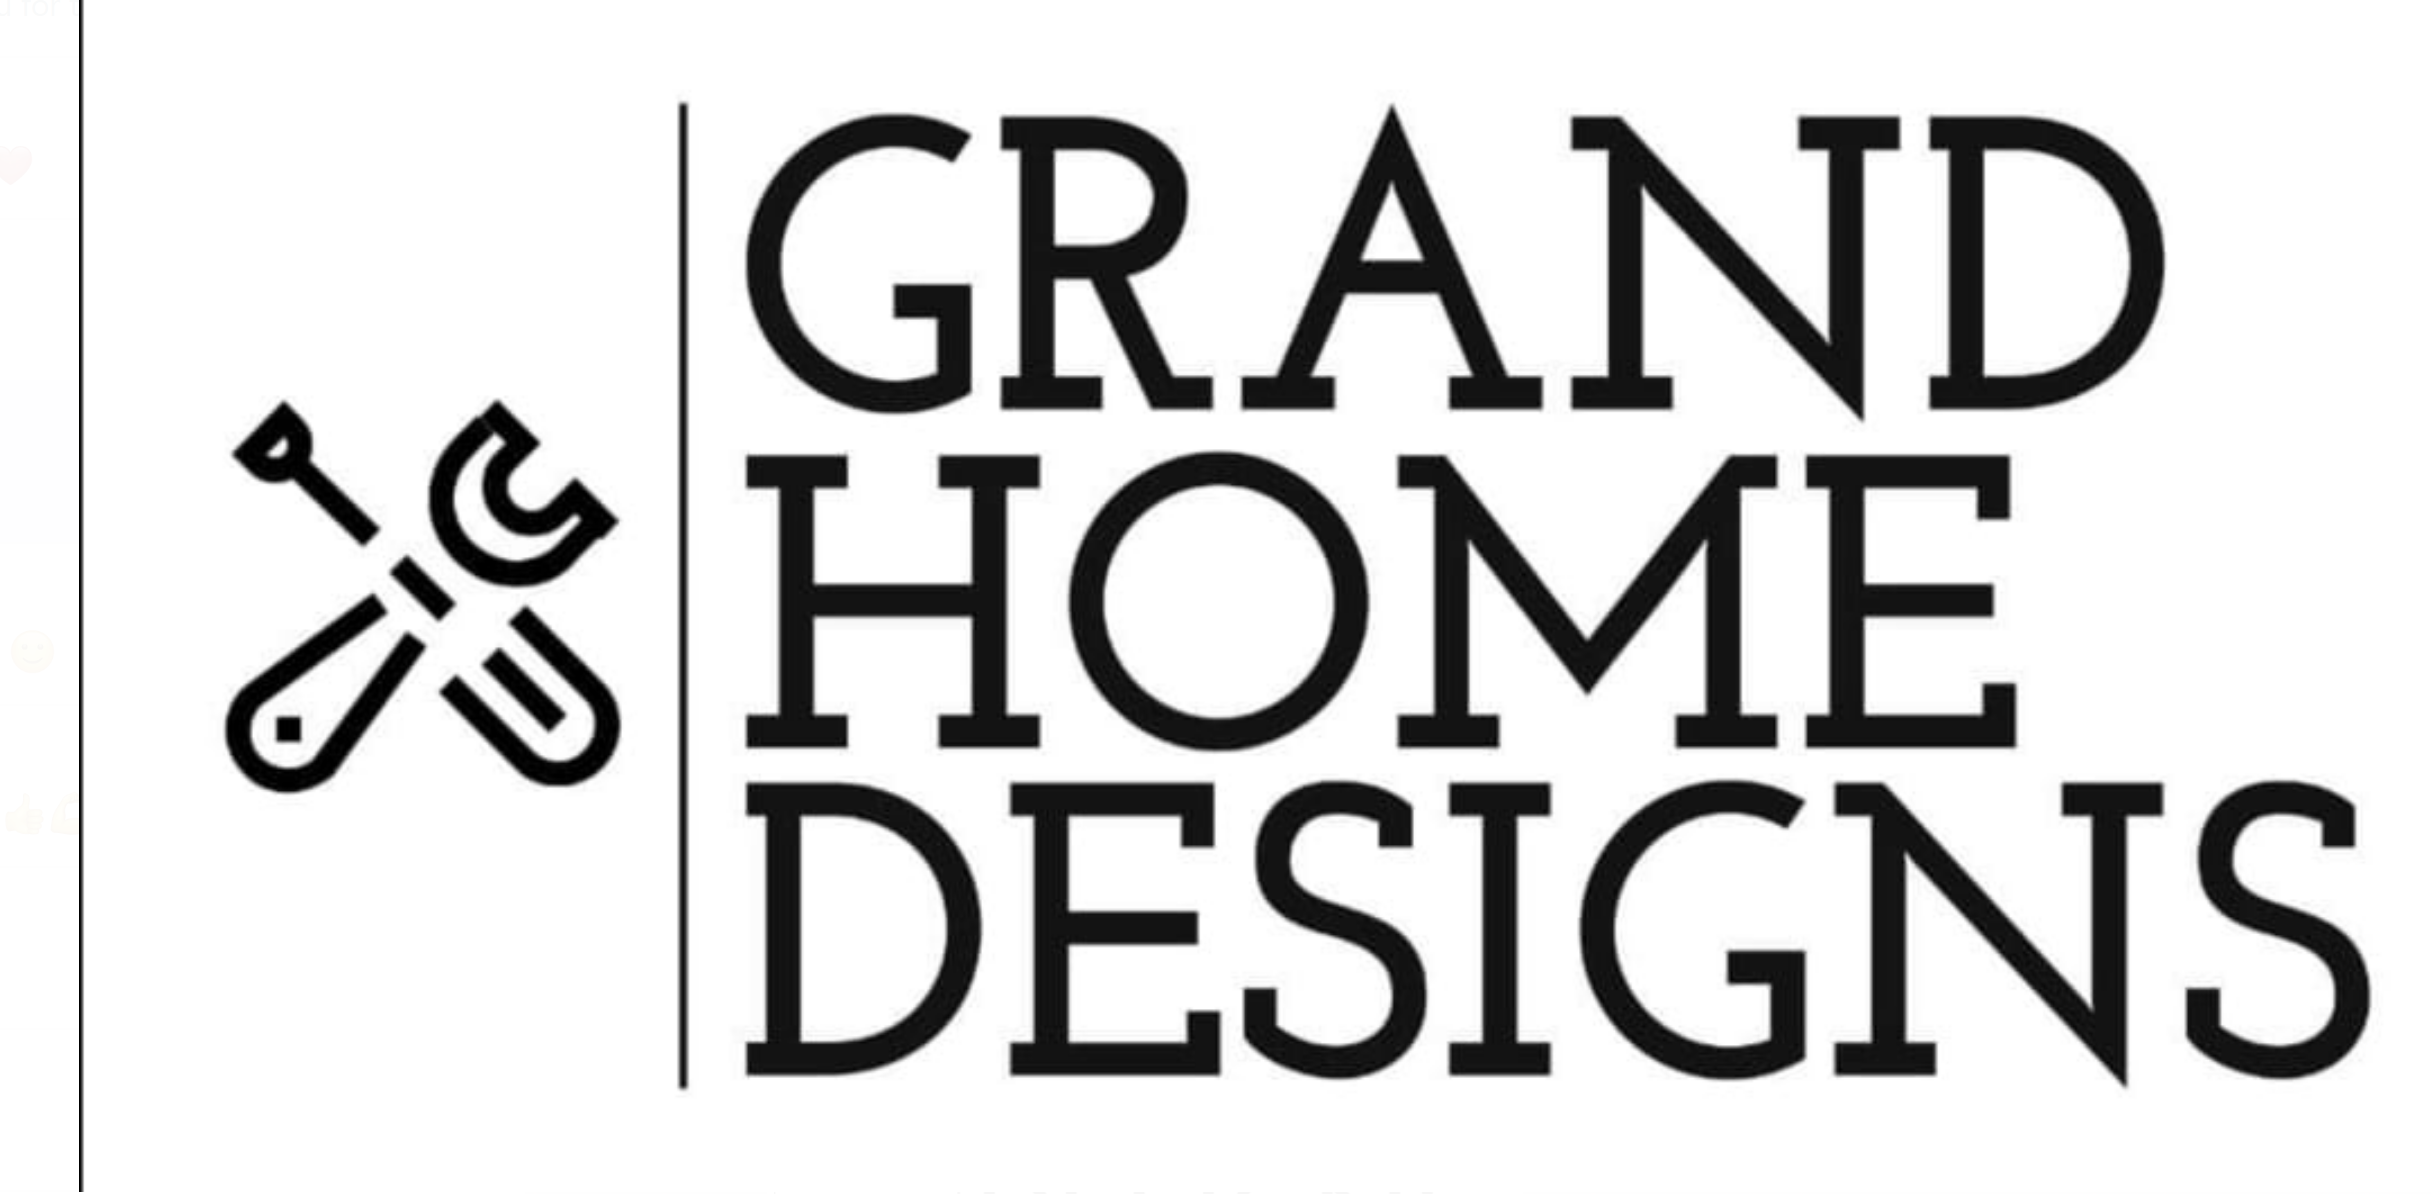 Grand Home Designs